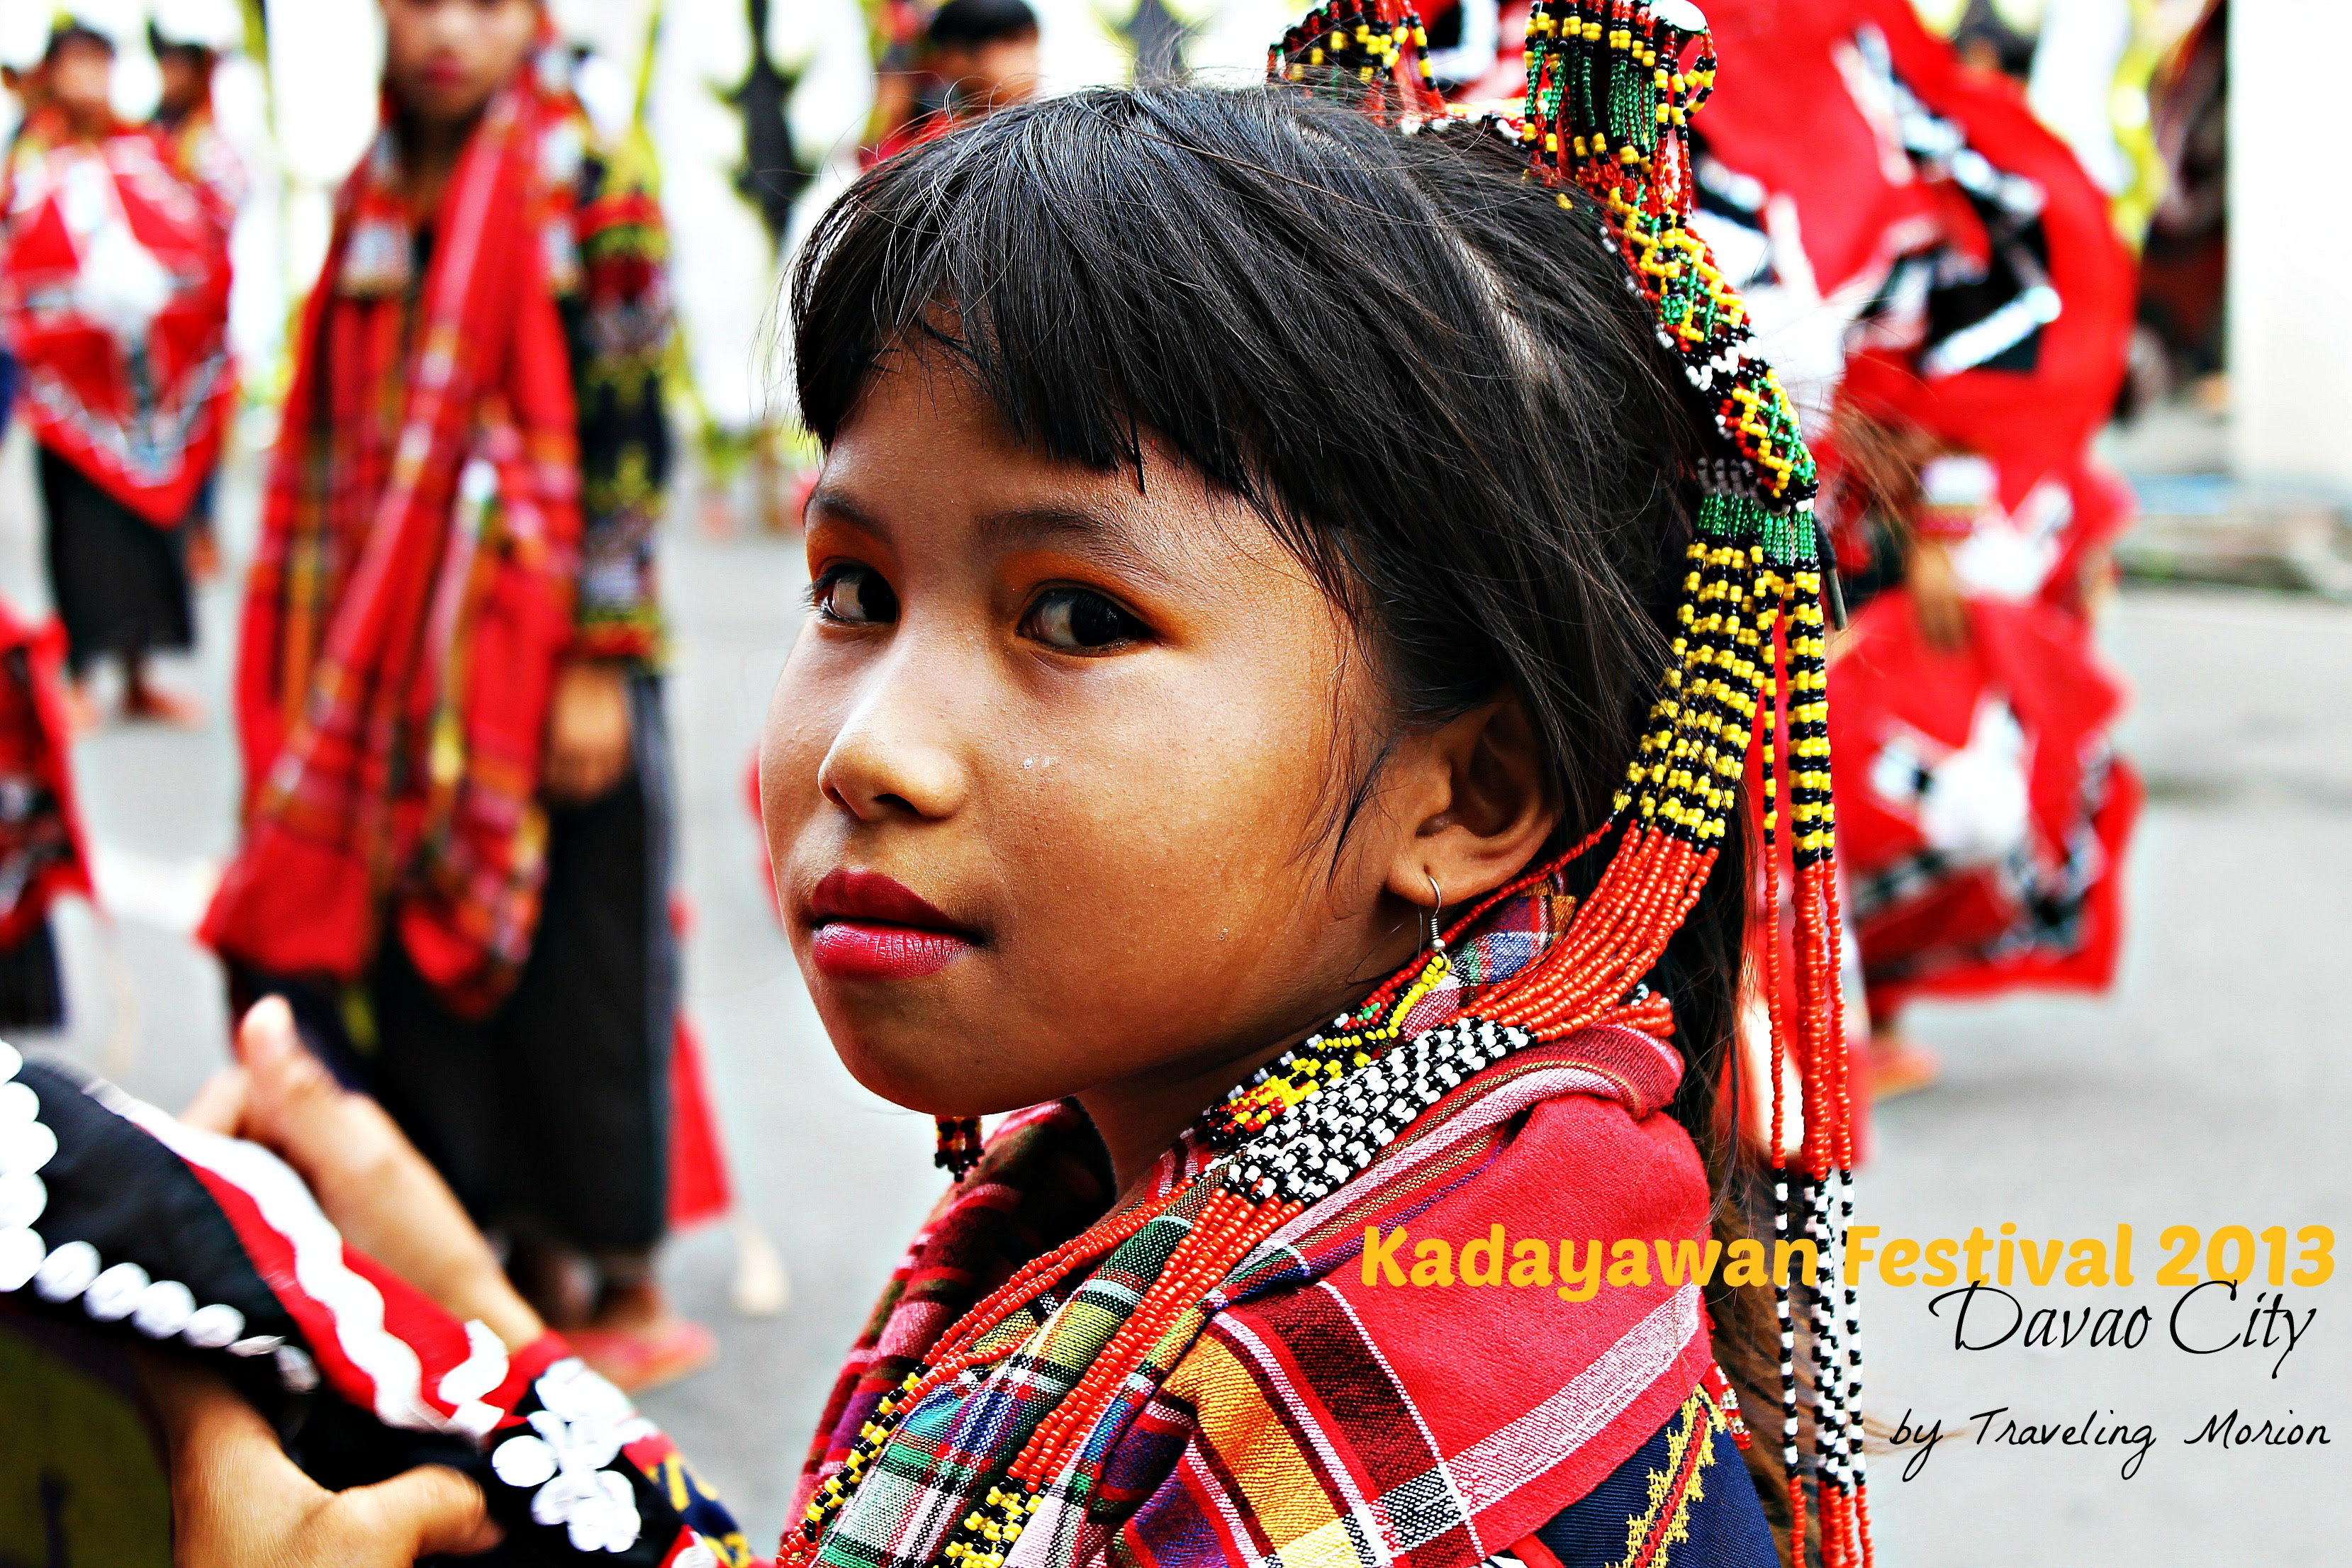 Kadayawan Festival 2013